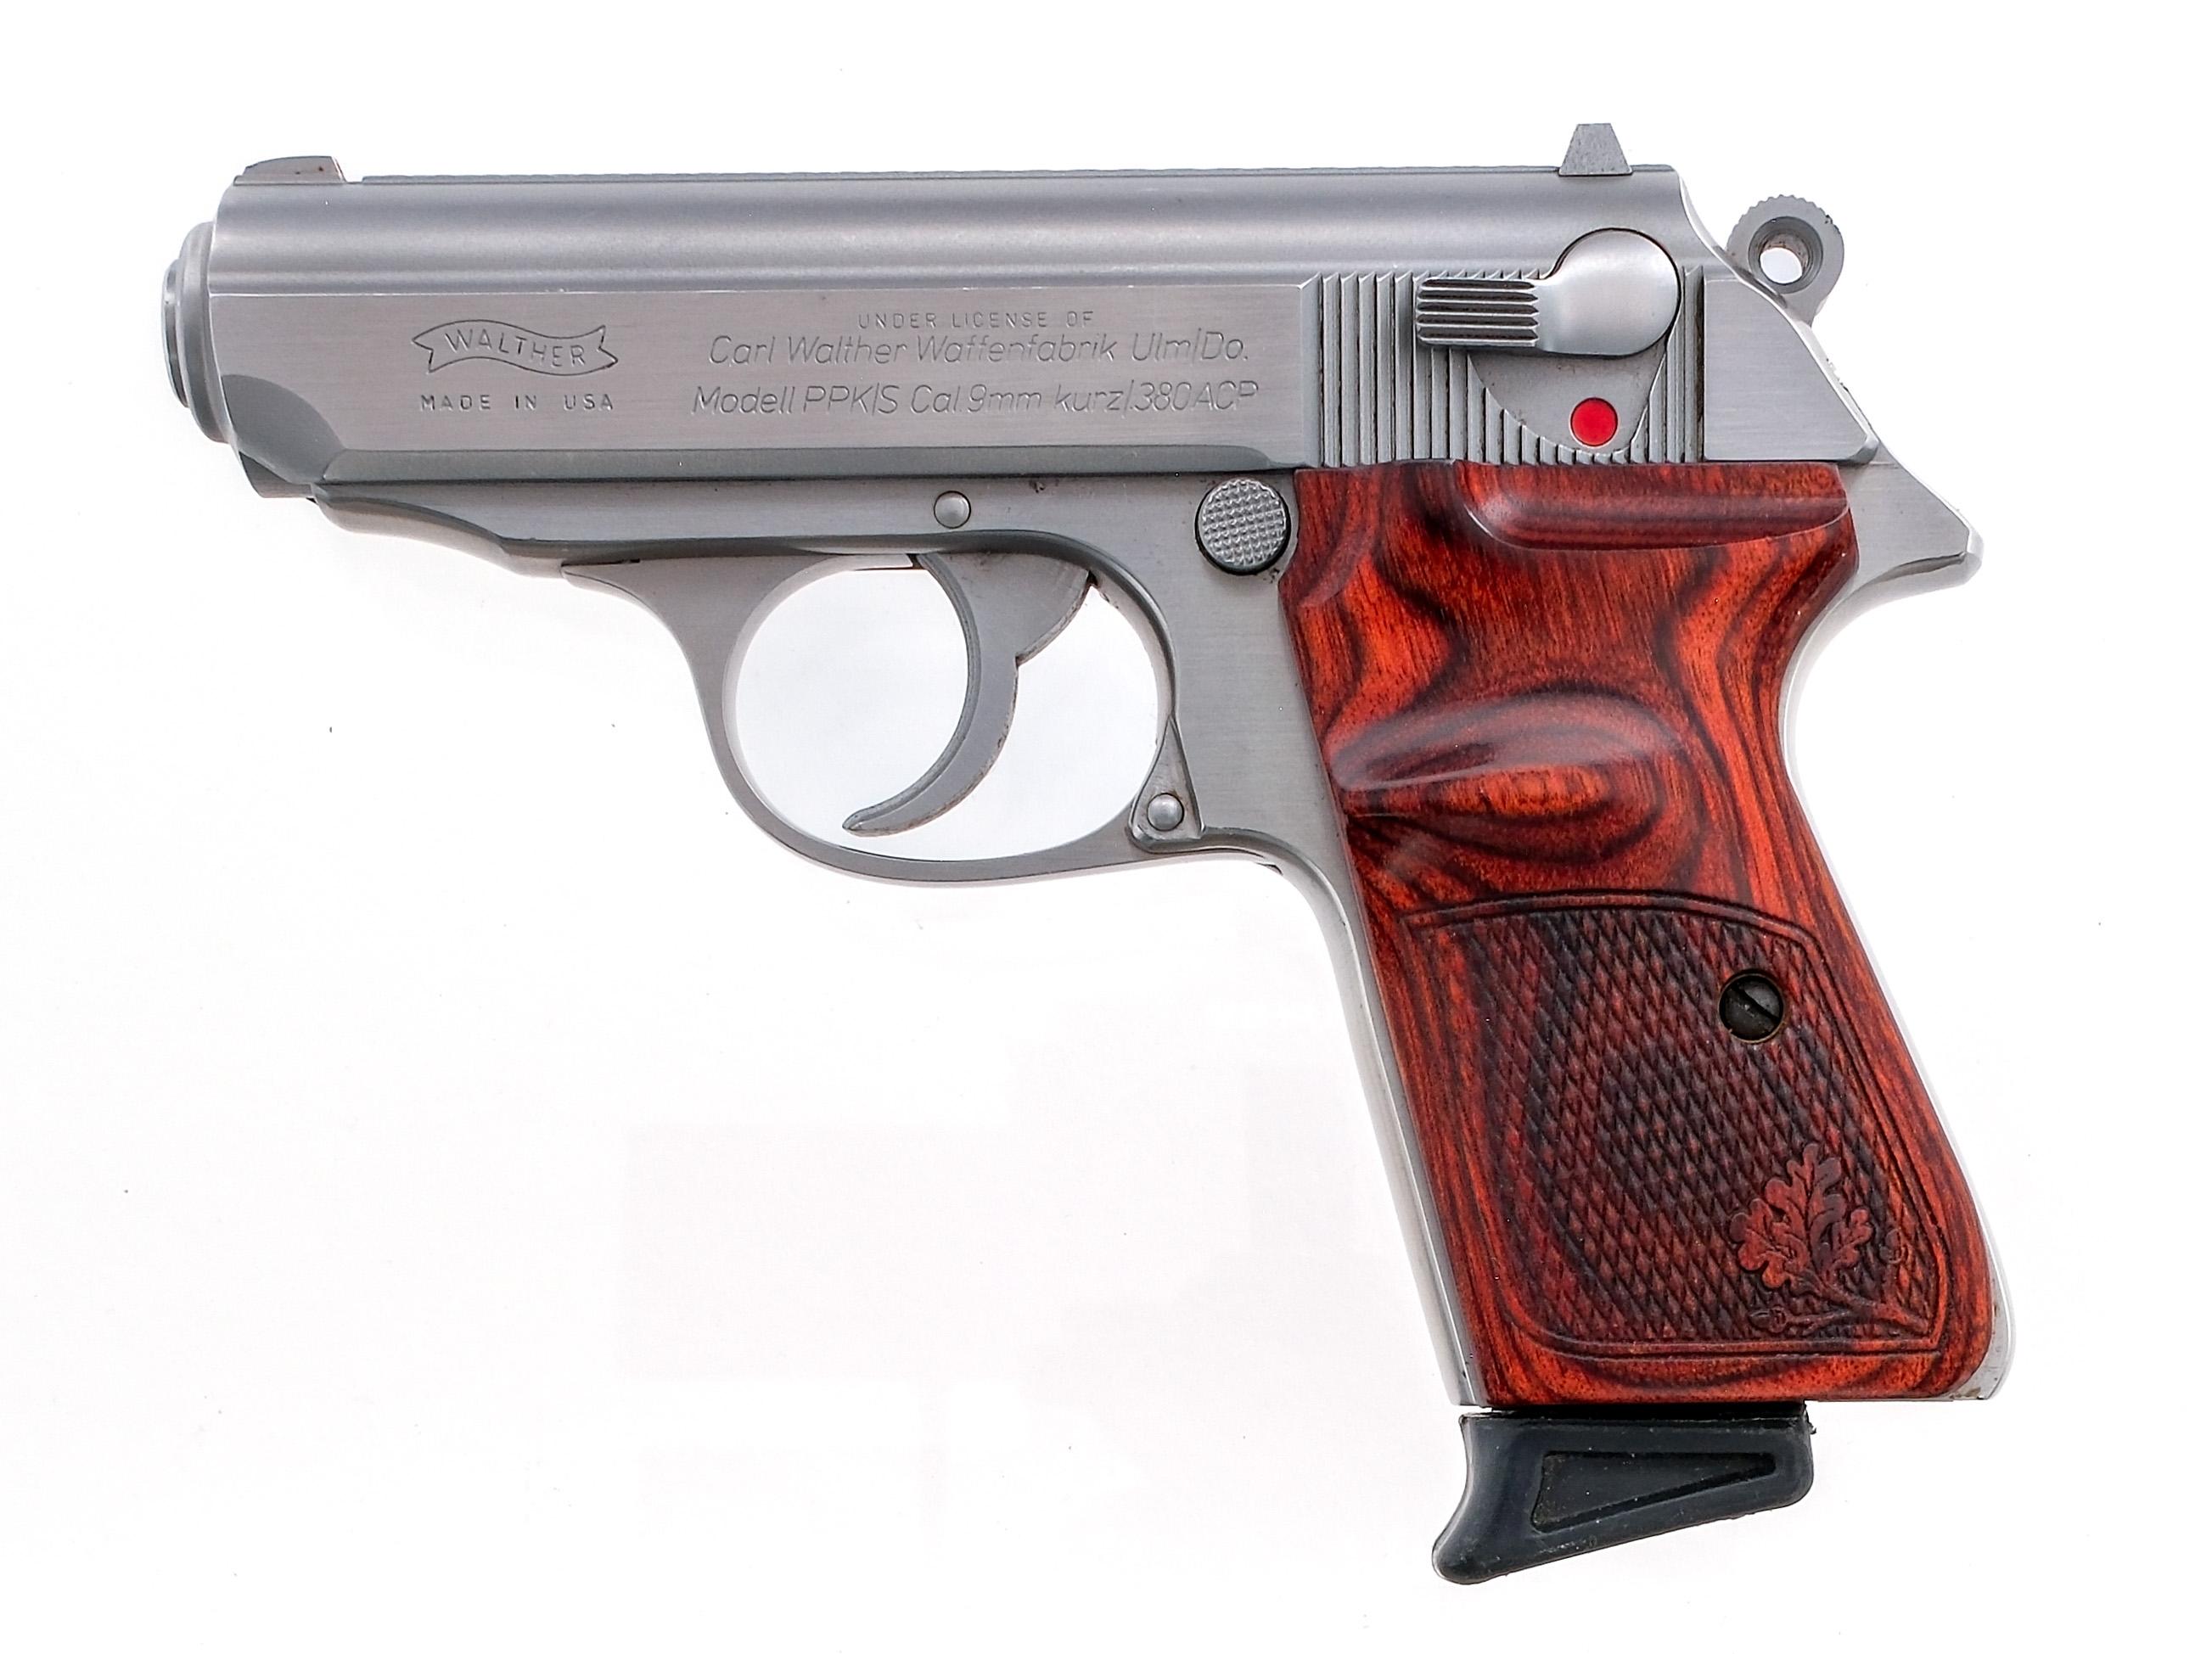 Walther PPK/S .380 ACP Semi Auto Pistol